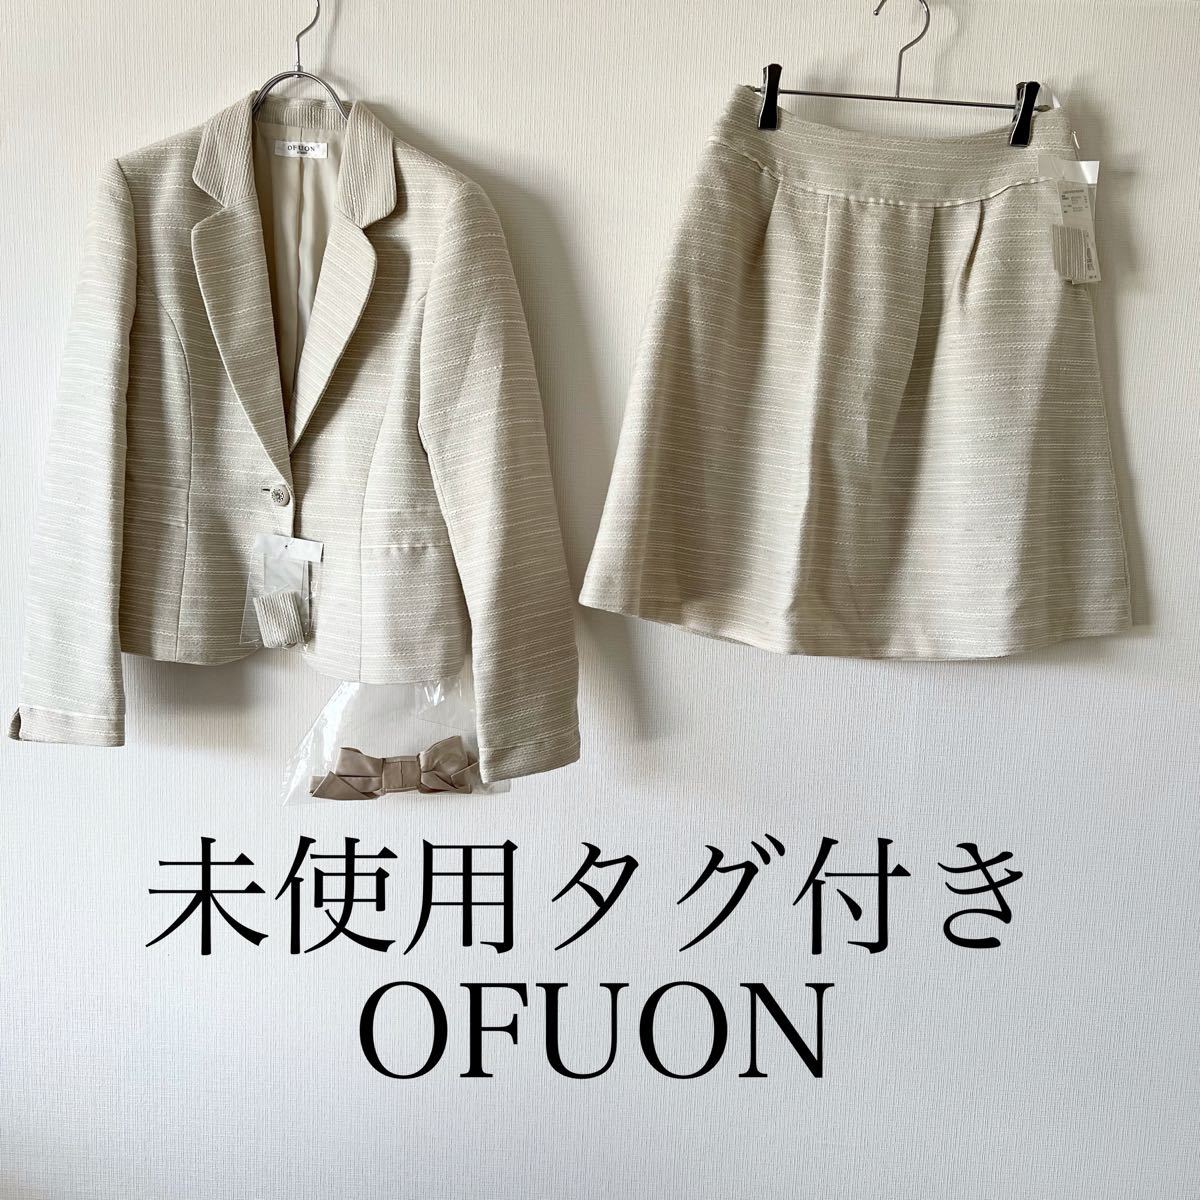 新品タグ付き OFUON サイズ38 スカートスーツ セットアップ Yahoo